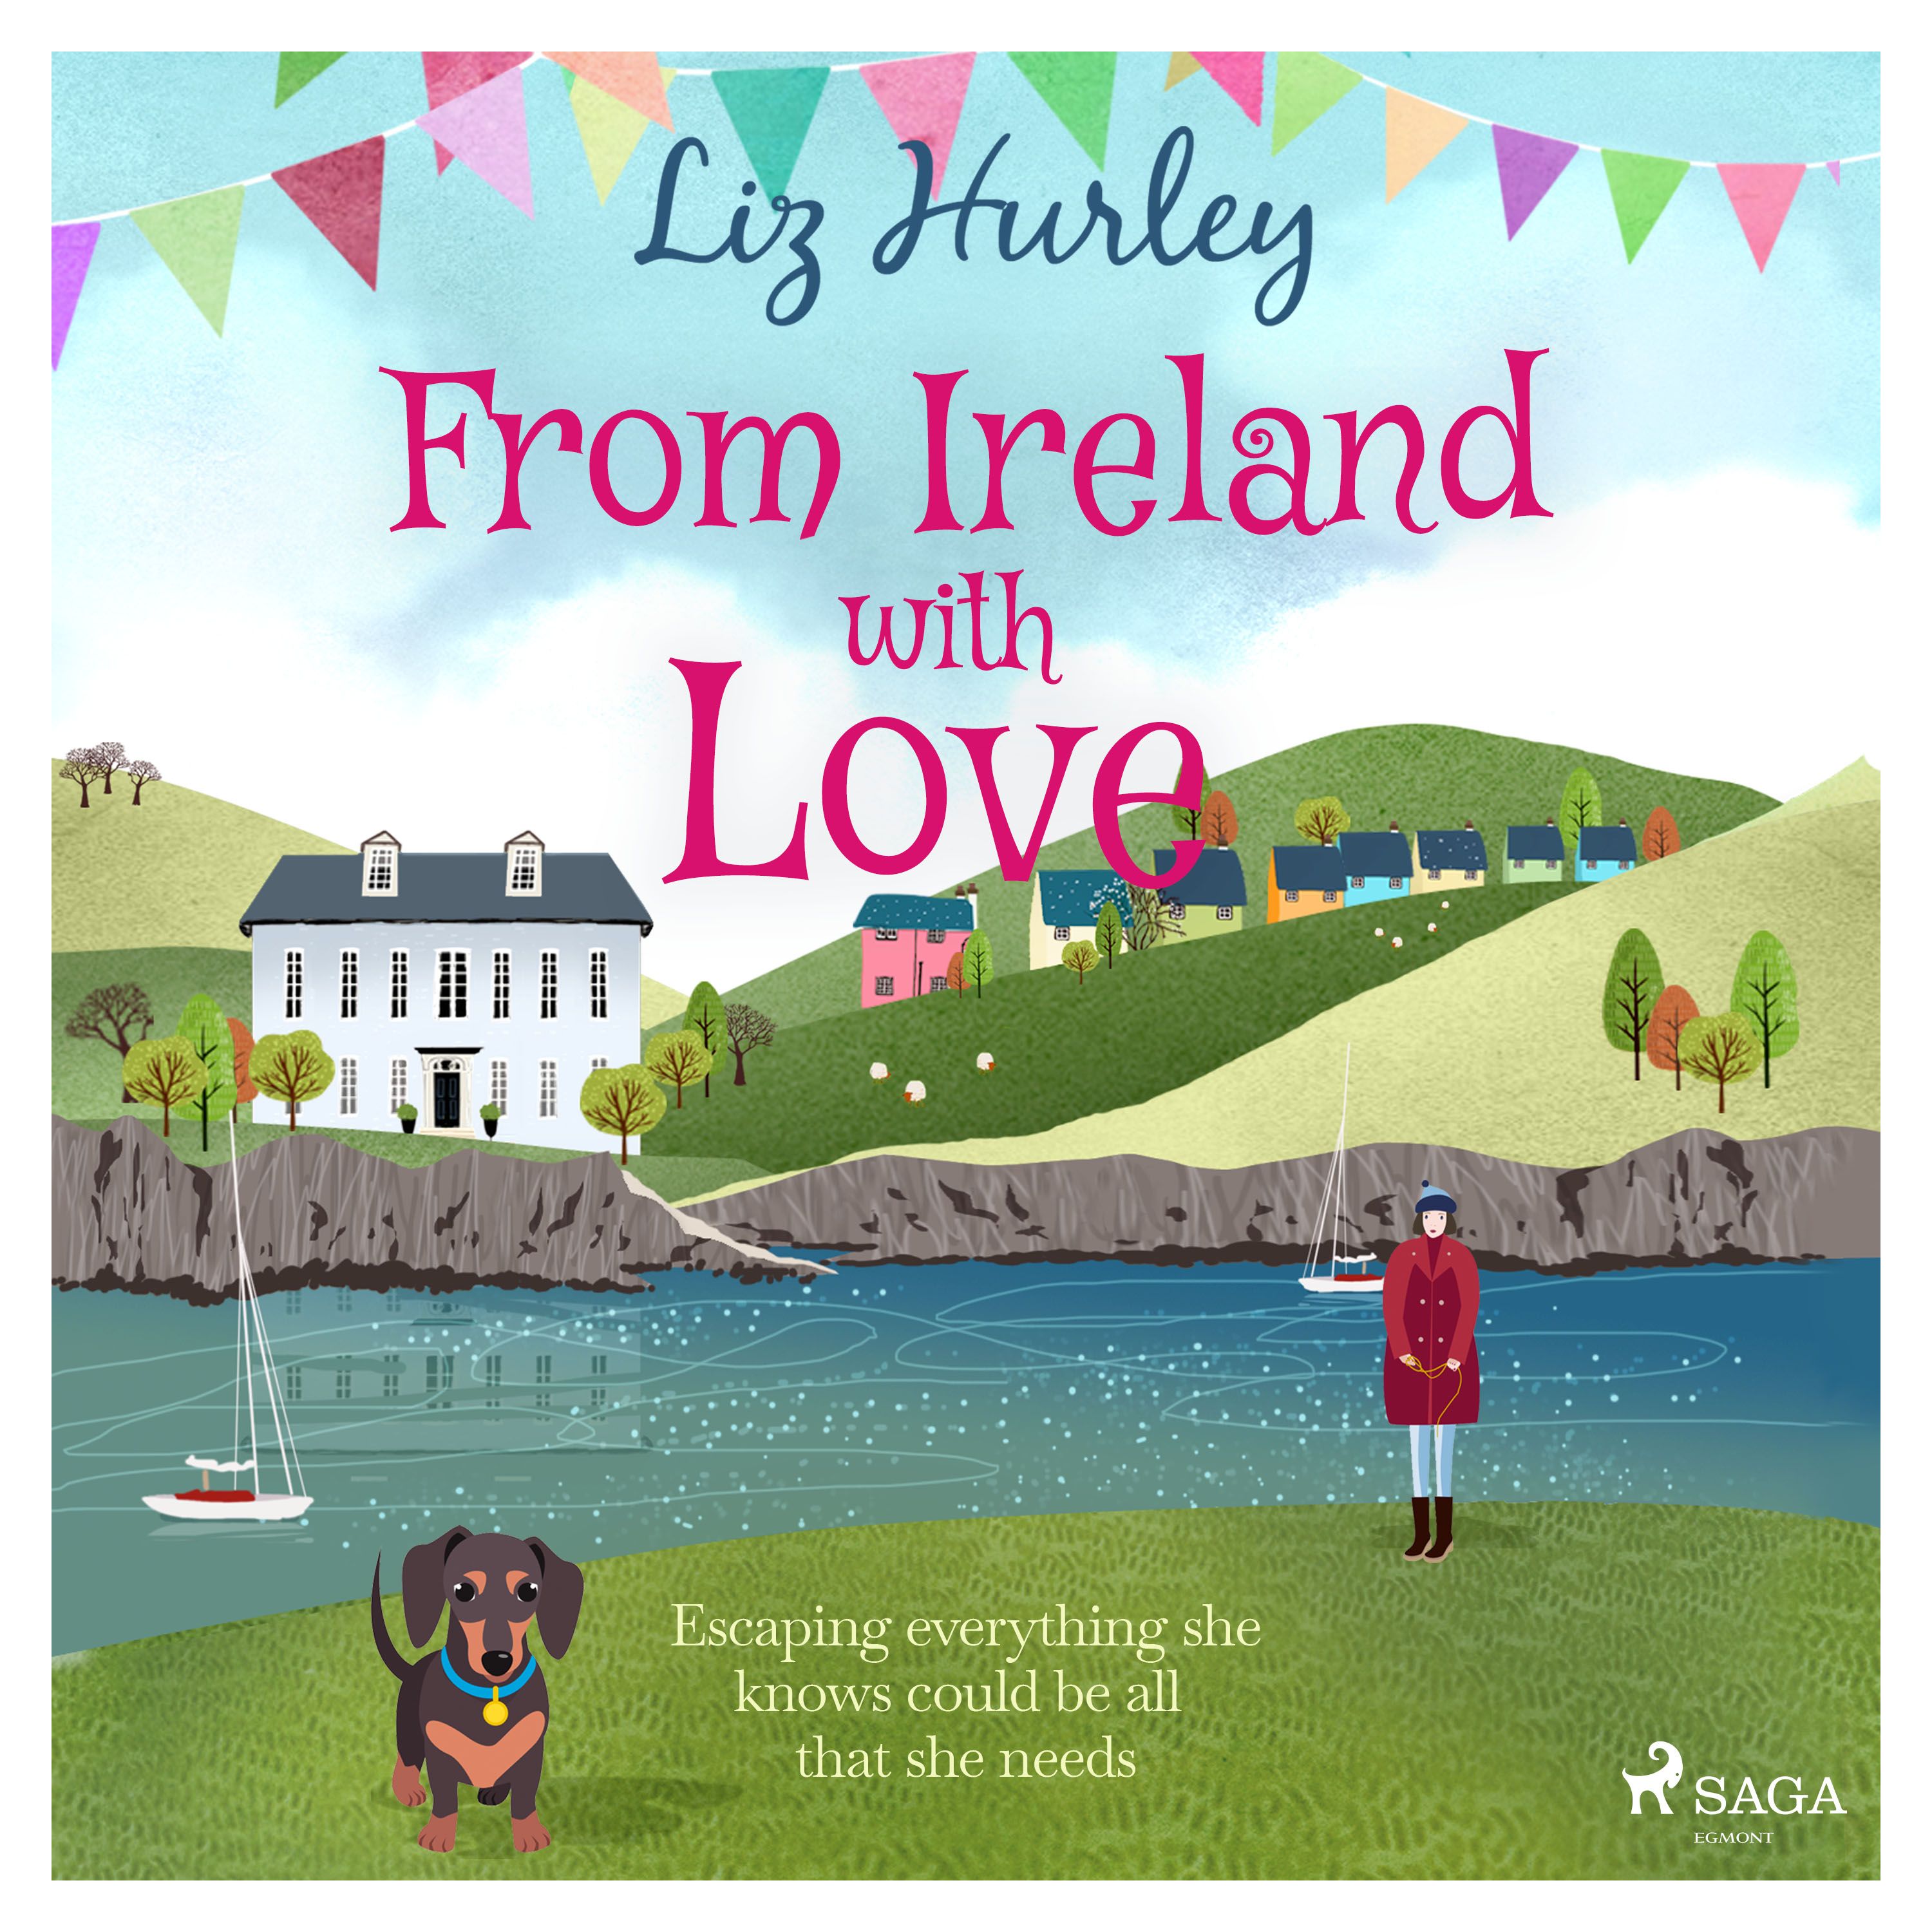 From Ireland With Love, ljudbok av Liz Hurley